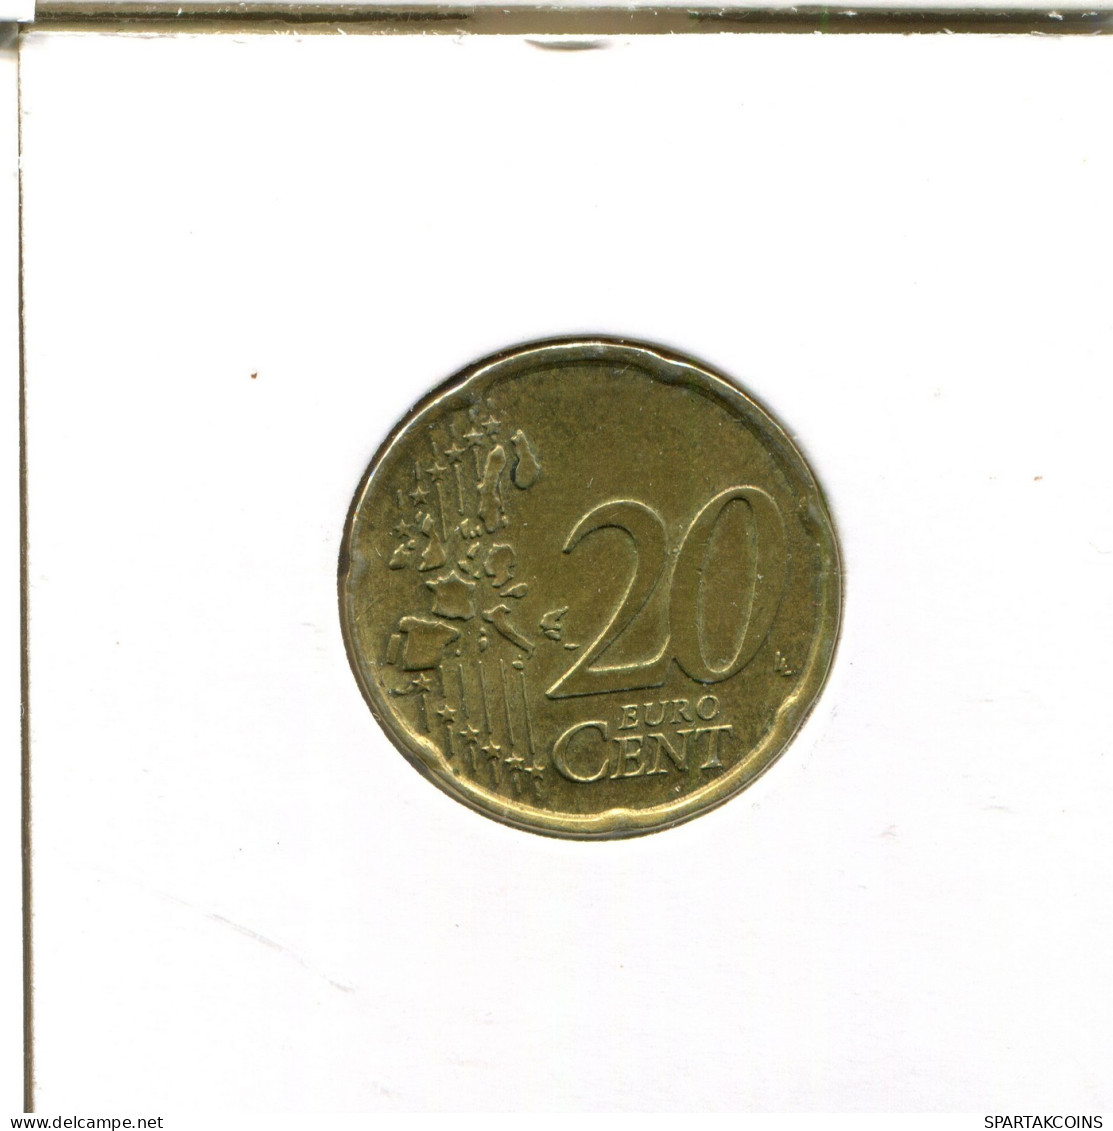 20 EURO CENTS 2003 ITALY Coin #EU237.U.A - Italien